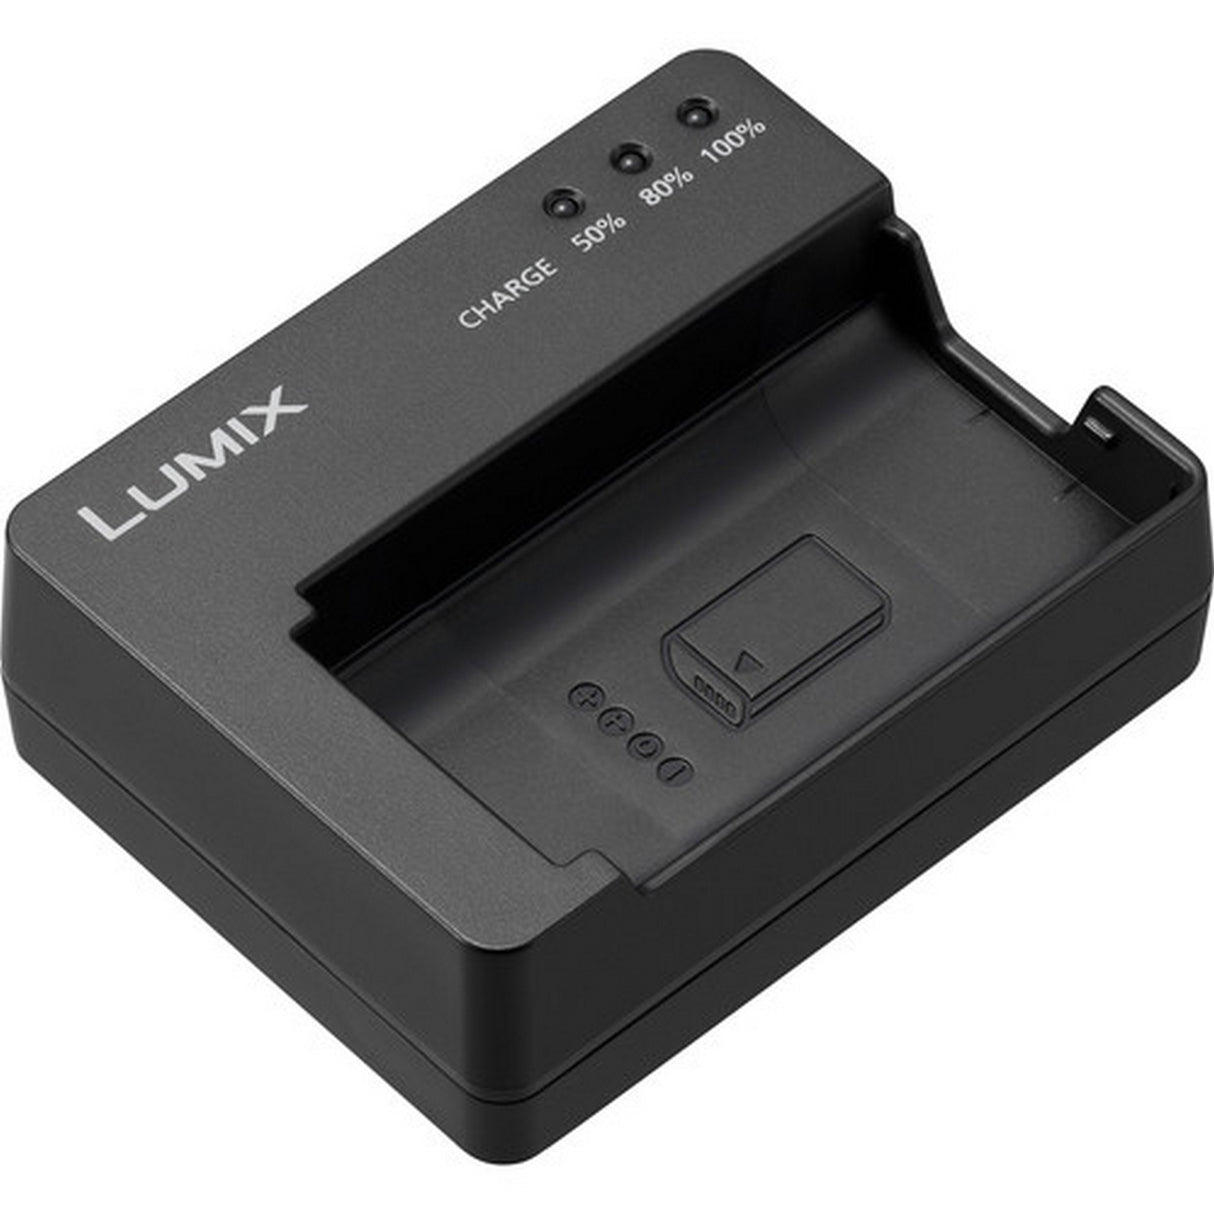 Panasonic LUMIX DMW-BTC14 Battery Charger